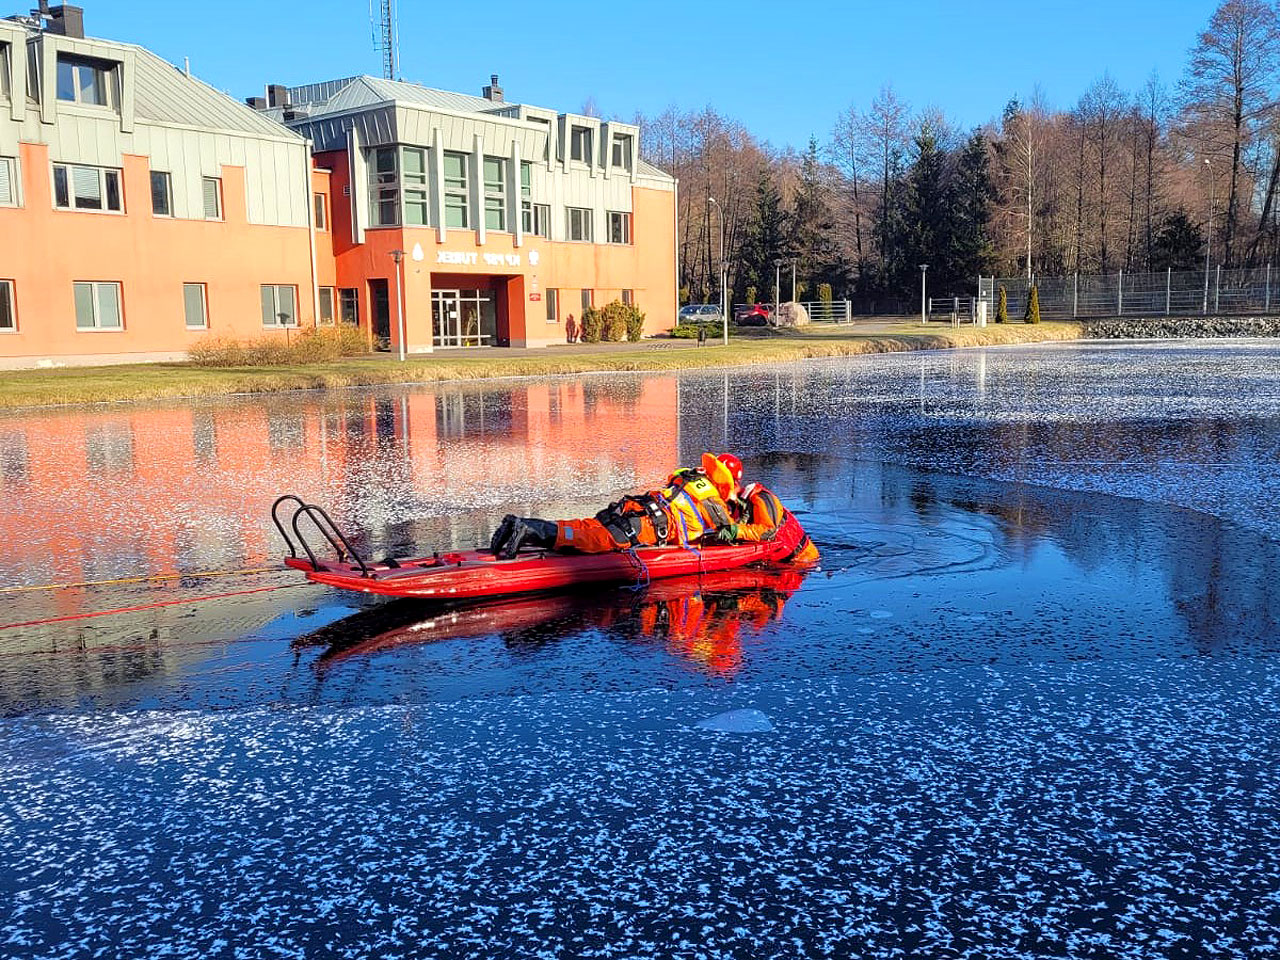 Ostrożnie z lodem! Korzystając z mrozu, strażacy szkolą się z ratownictwa - fot.: PSP Archiwum JRG Turek / KW PSP Poznań